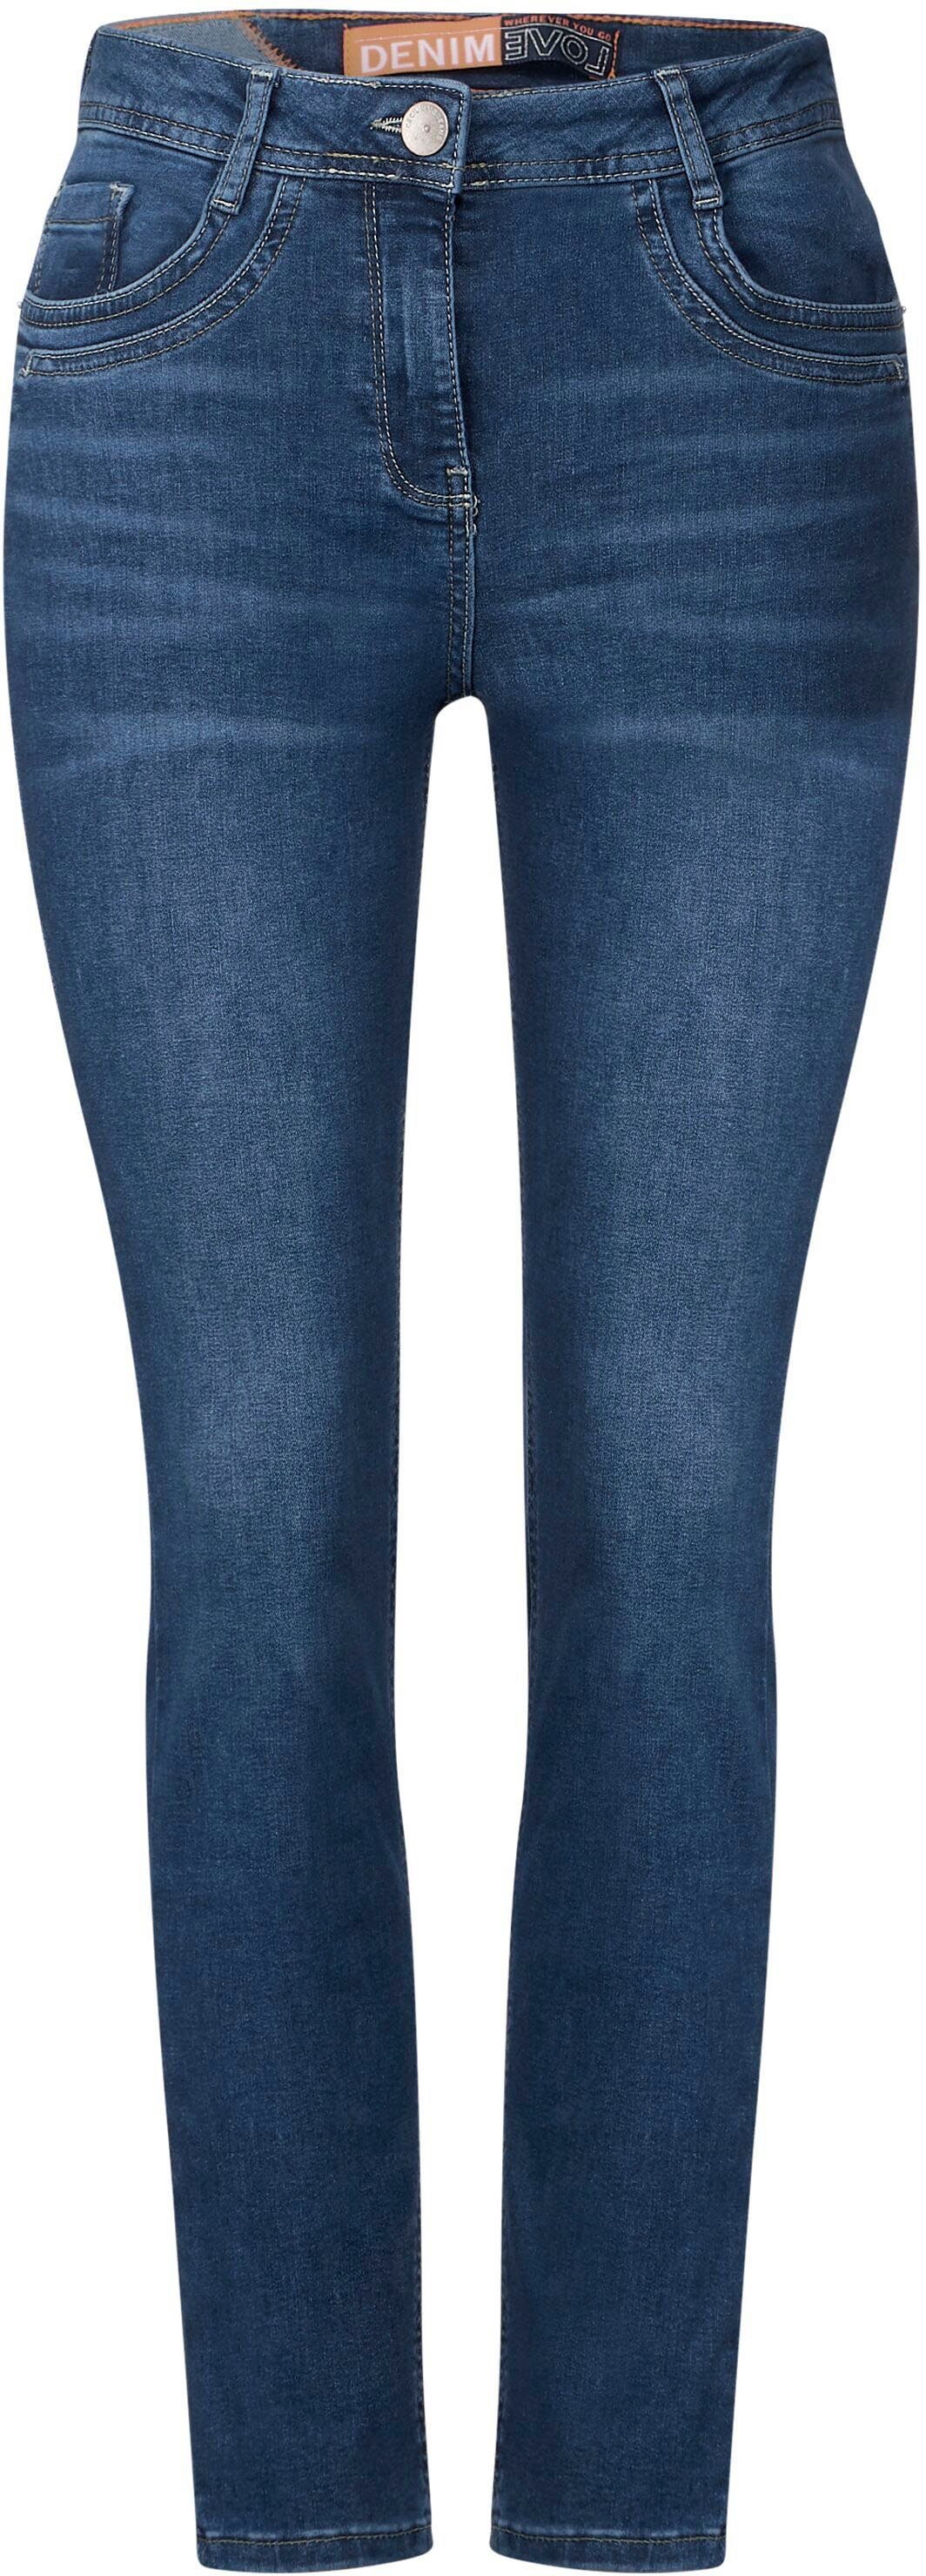 Cecil knöchellanger Toronto in Ausführung Slim-fit-Jeans Style